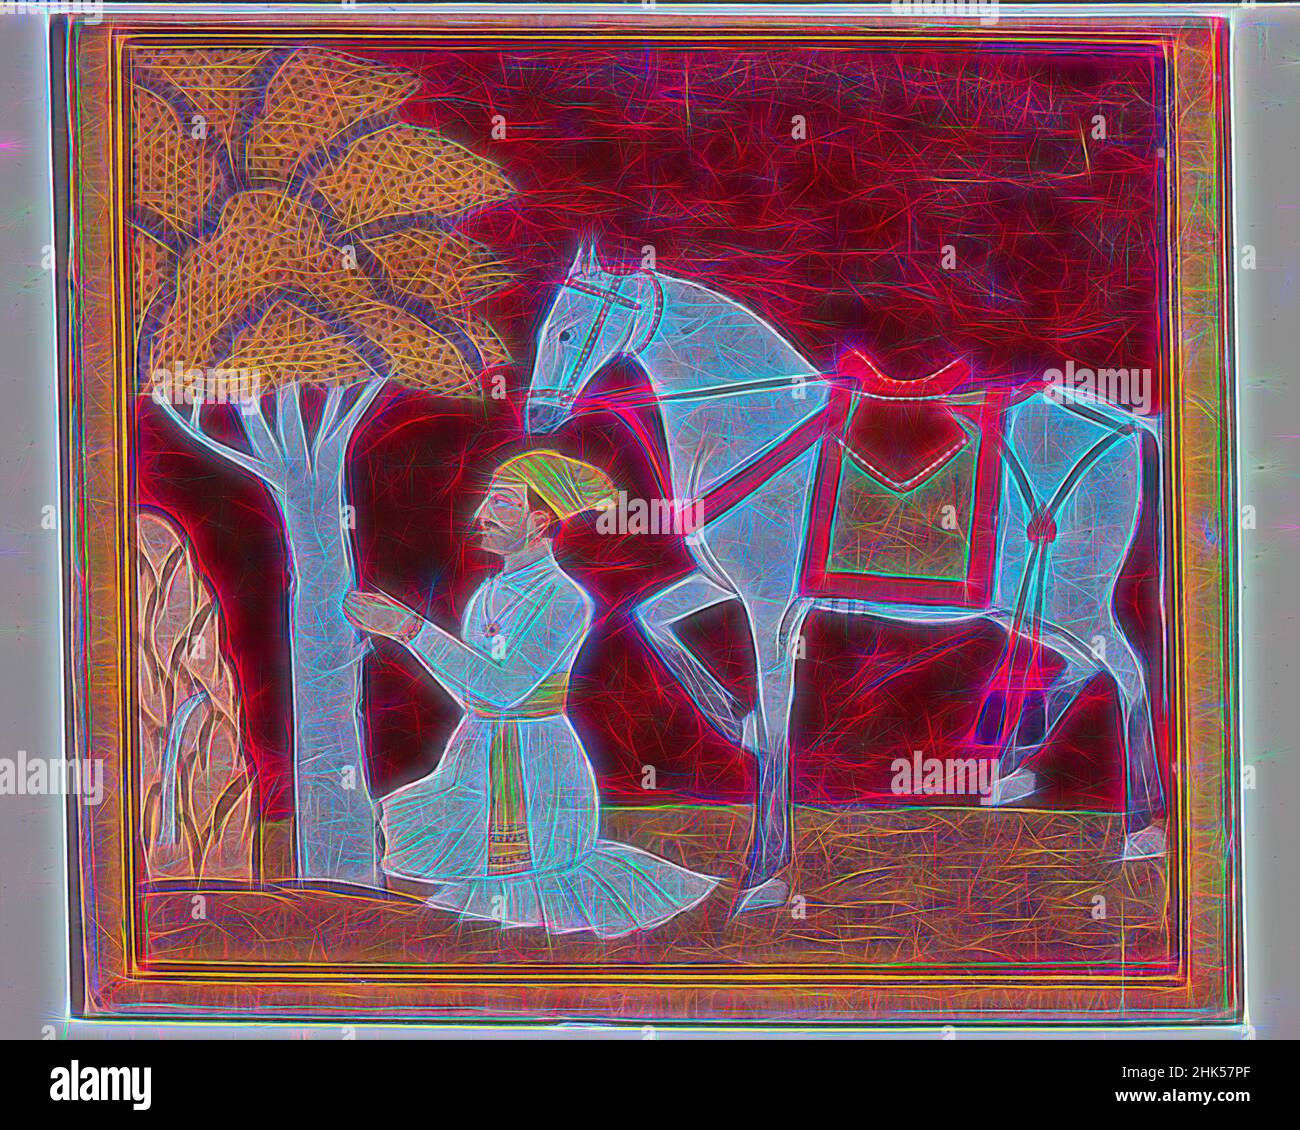 Inspiré par l'illustration d'une série Madhu-Malati, attribué à Bhagvan, aquarelle opaque et or sur papier, Punjab Hills, Inde, ca. 1799, feuille : 6 1/2 x 8 5/8 po, 16,5 x 21,9 cm, barbu, Bhagvan, Or, cheval, Peinture indienne, agenouillement, Kulu, lacustre d'une série Madhu-Malati, homme, réimaginé par Artotop. L'art classique réinventé avec une touche moderne. Conception de lumière chaleureuse et gaie, de luminosité et de rayonnement de lumière. La photographie s'inspire du surréalisme et du futurisme, embrassant l'énergie dynamique de la technologie moderne, du mouvement, de la vitesse et révolutionne la culture Banque D'Images